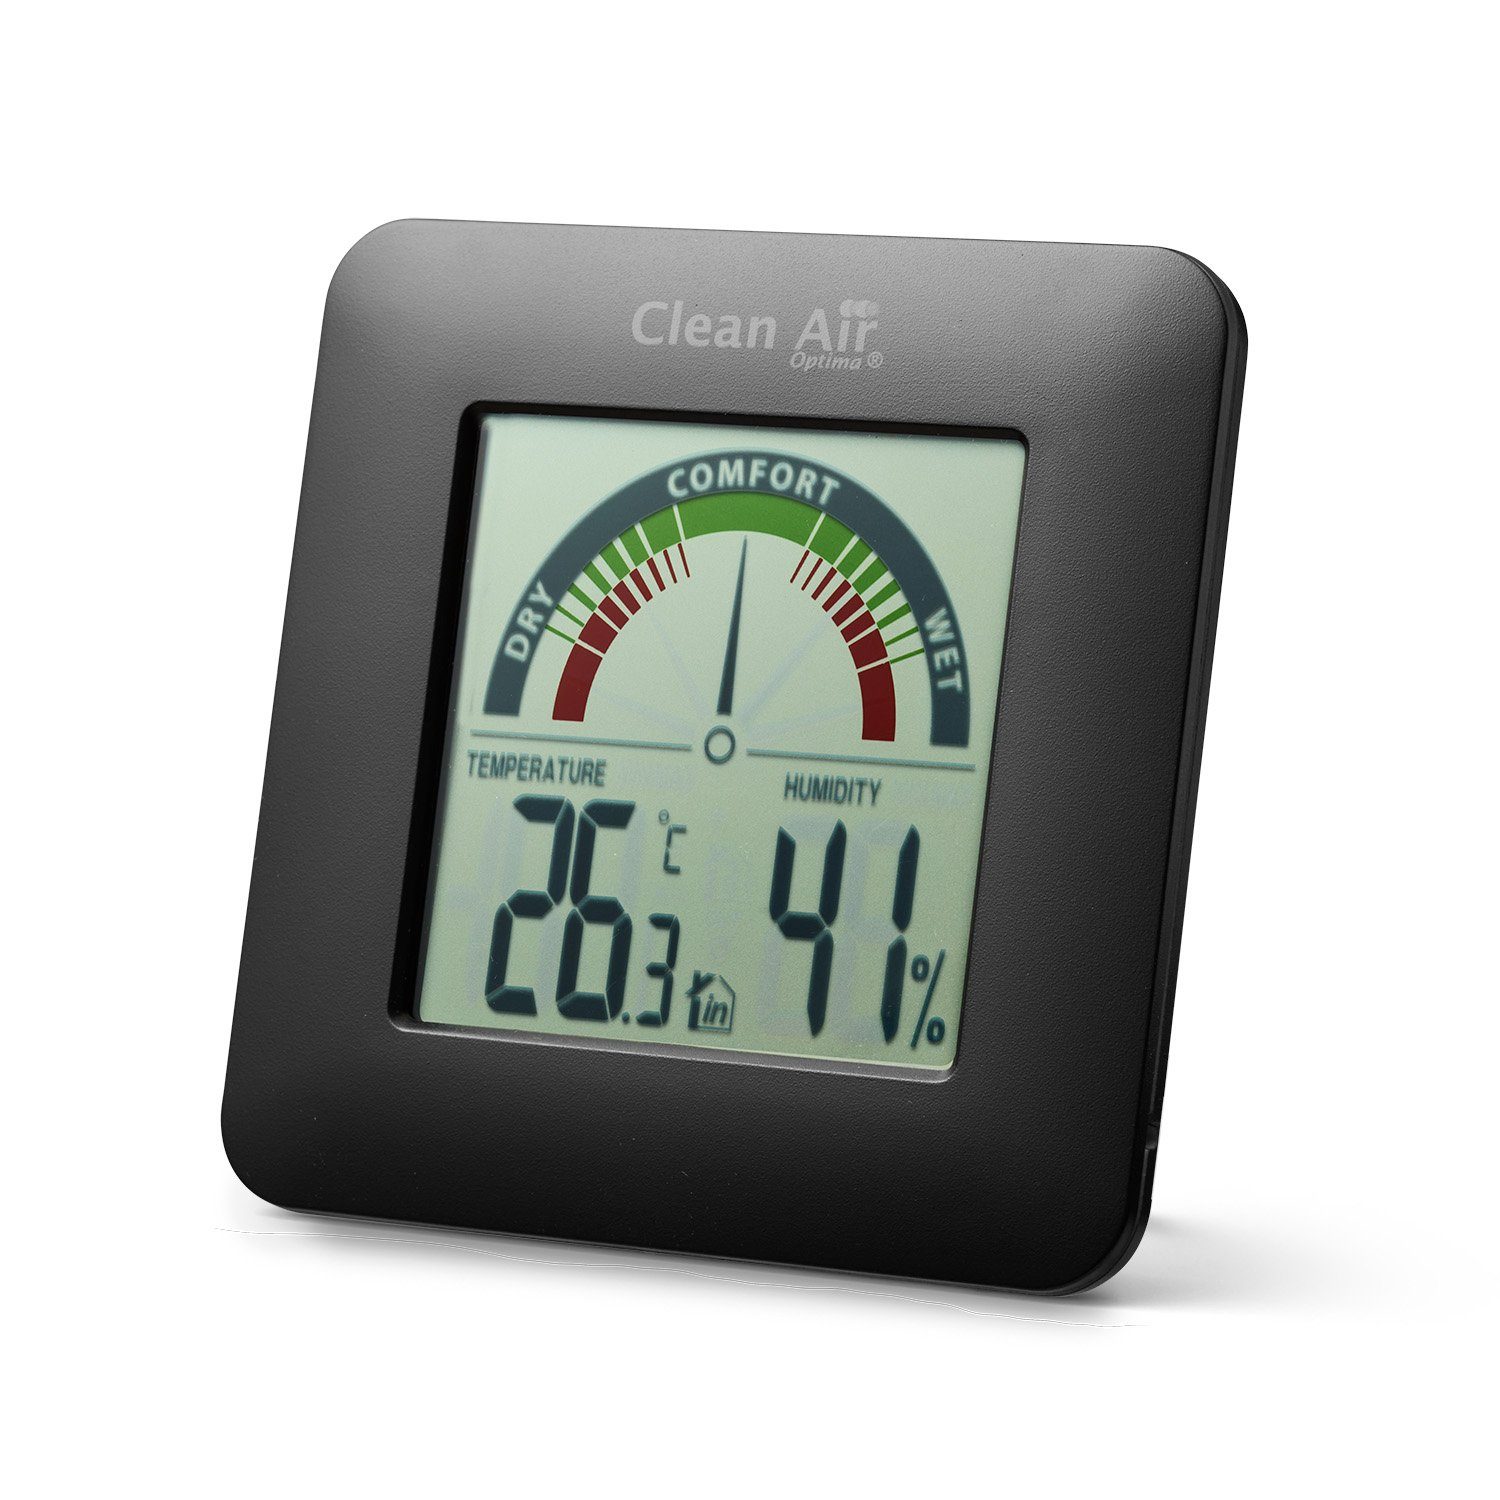 Clean Air und HT-01B Air Clean Hygrometer Thermometer Optima Hygrometer Optima